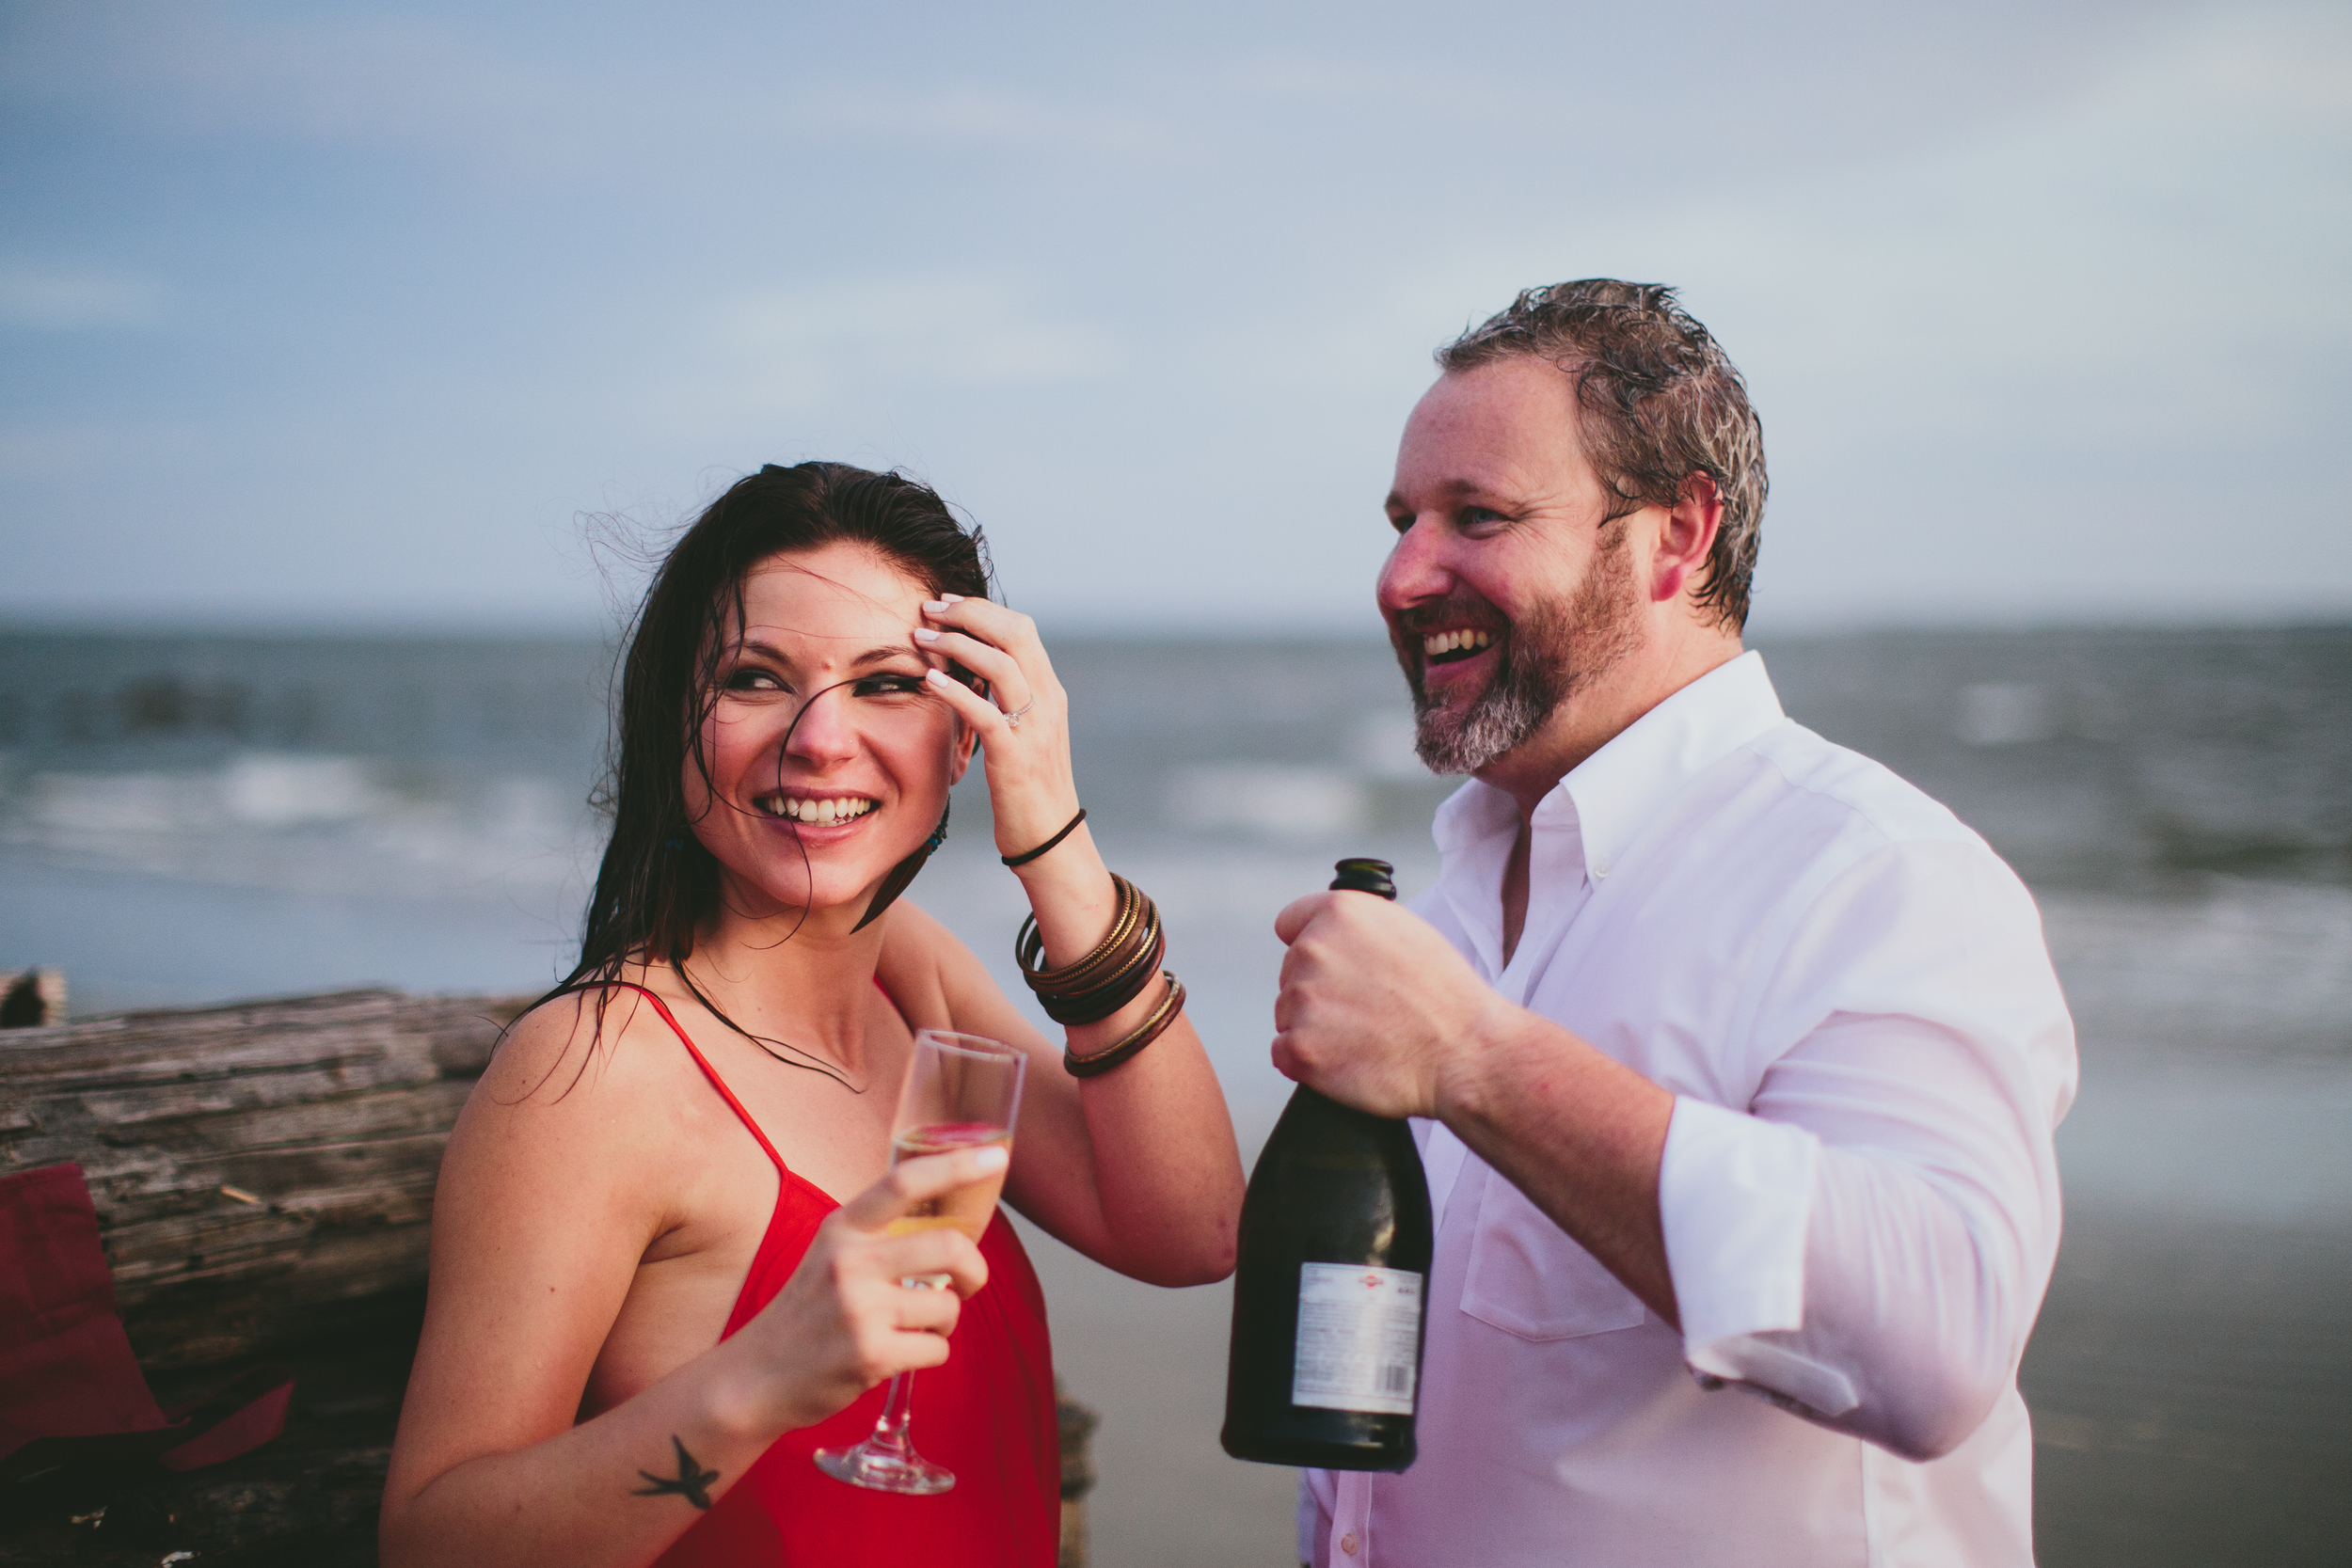 Whitney + Talbert's Charleston Beach engagement by Angela Cox Photography